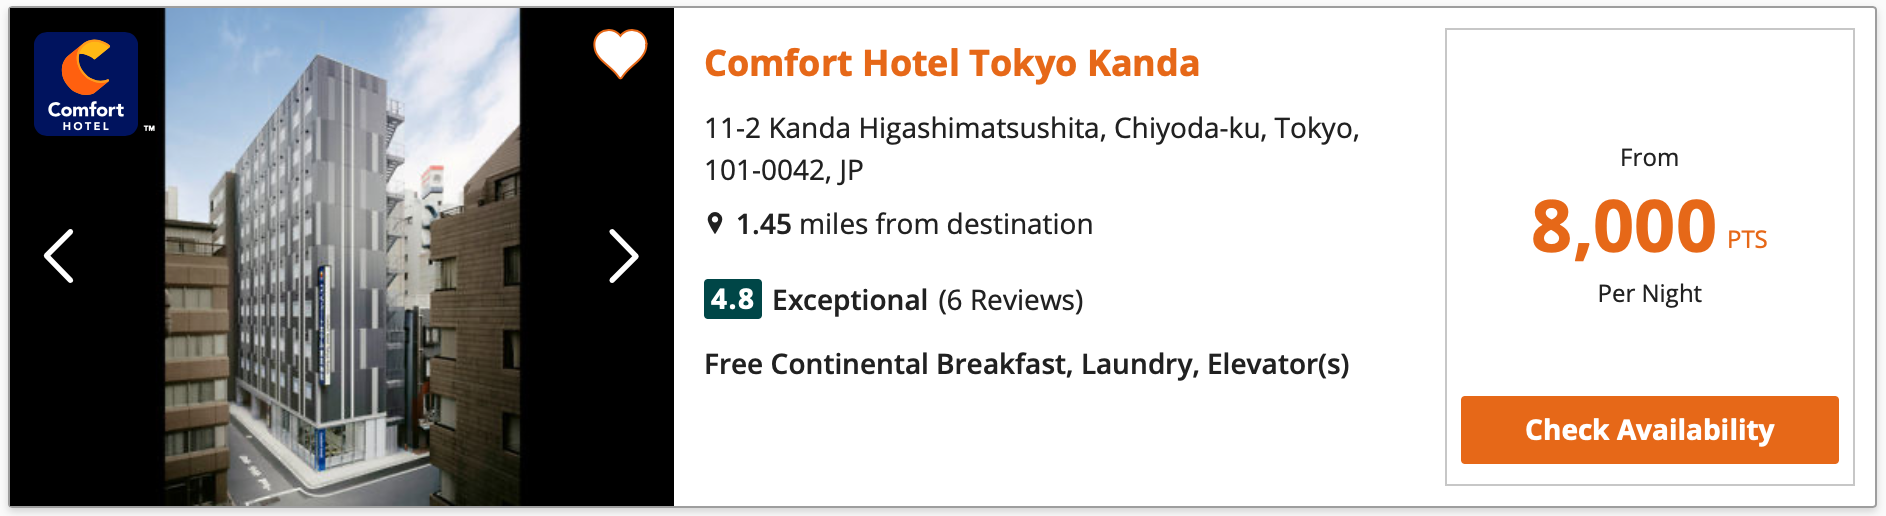 Comfort Hotel Tokyo Kanda Price